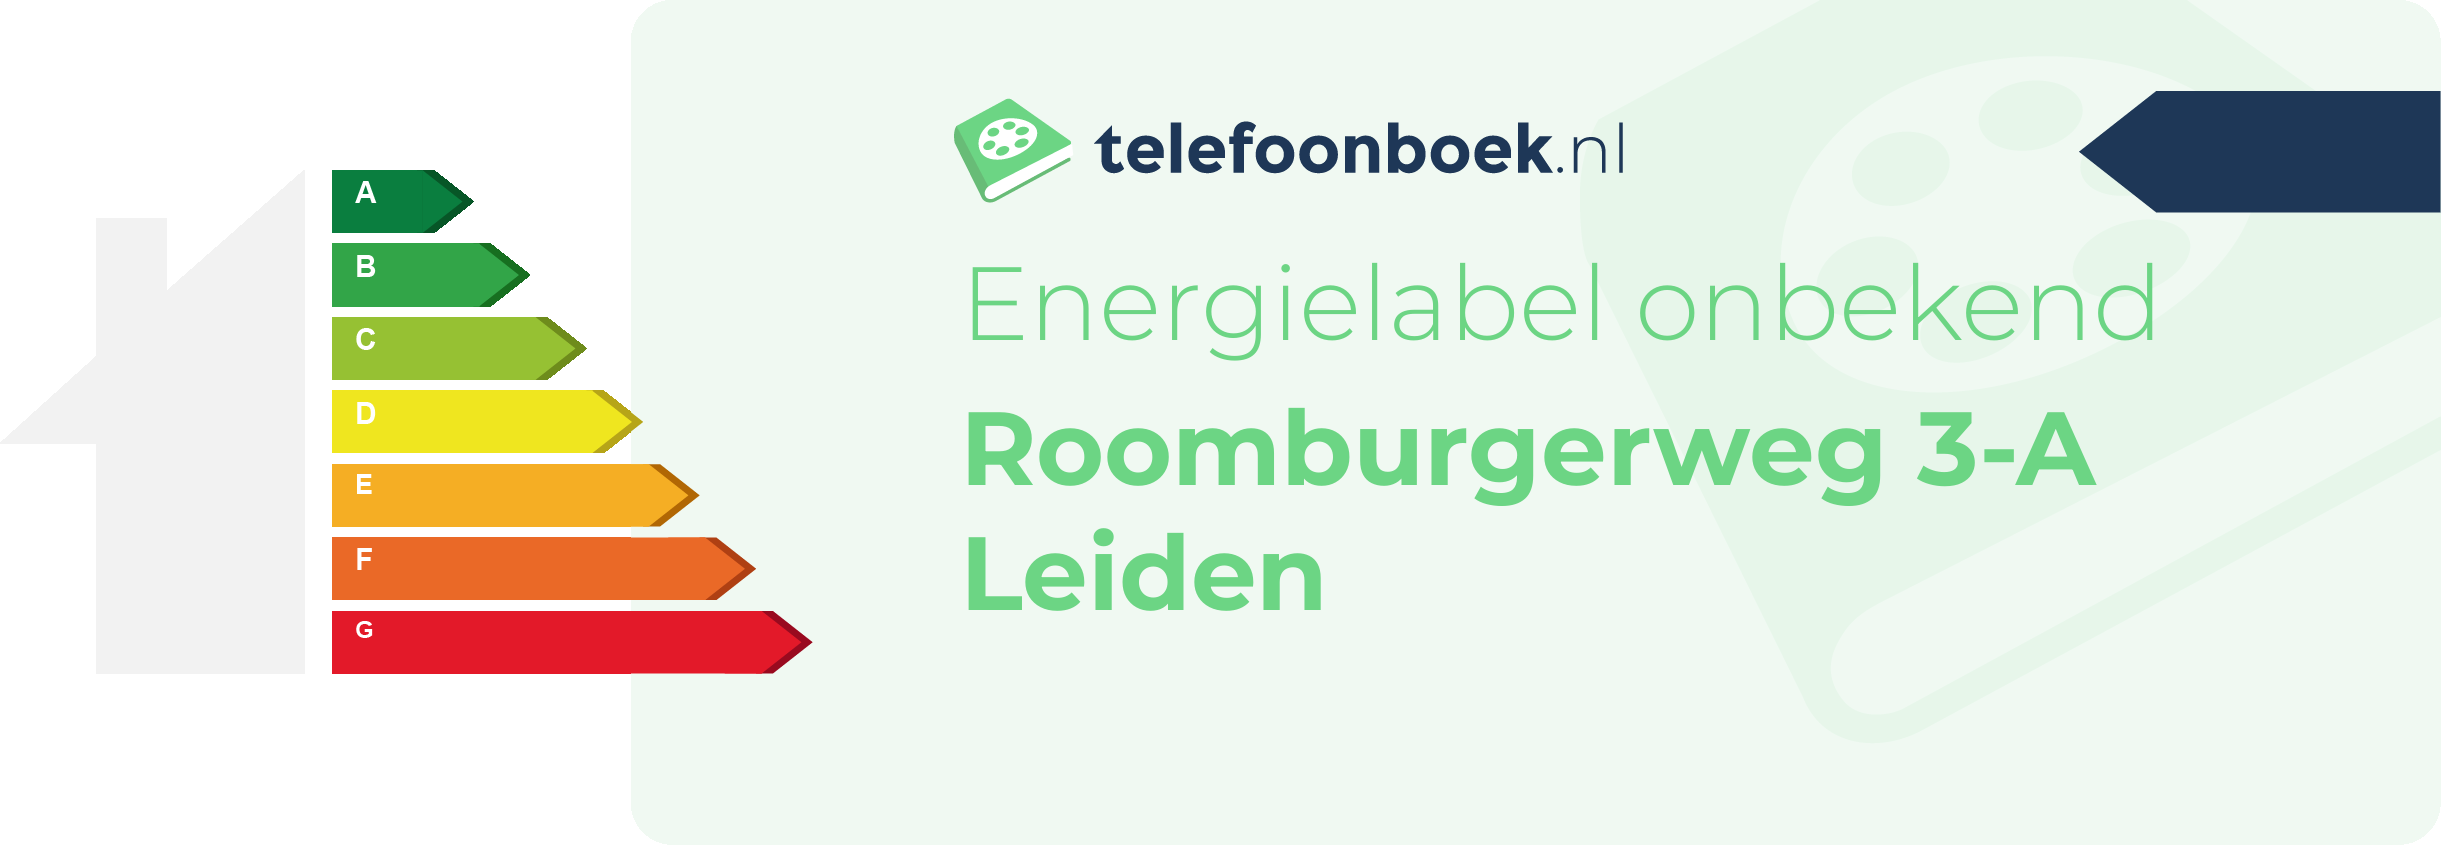 Energielabel Roomburgerweg 3-A Leiden